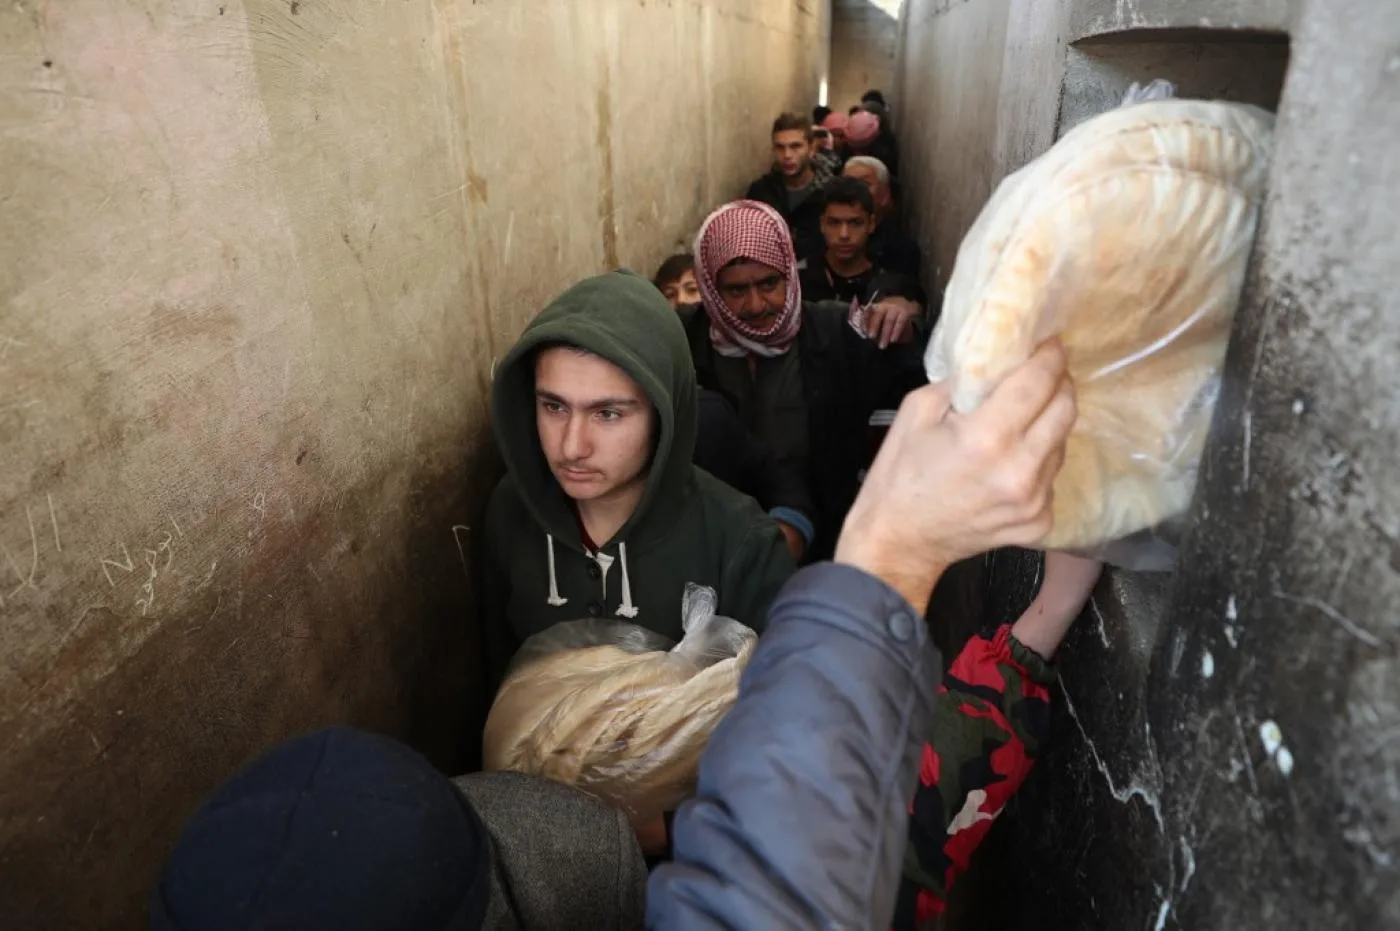 السوريون يقفون في طابور لشراء الخبز في مدينة بنش بمحافظة إدلب شمال غرب سوريا